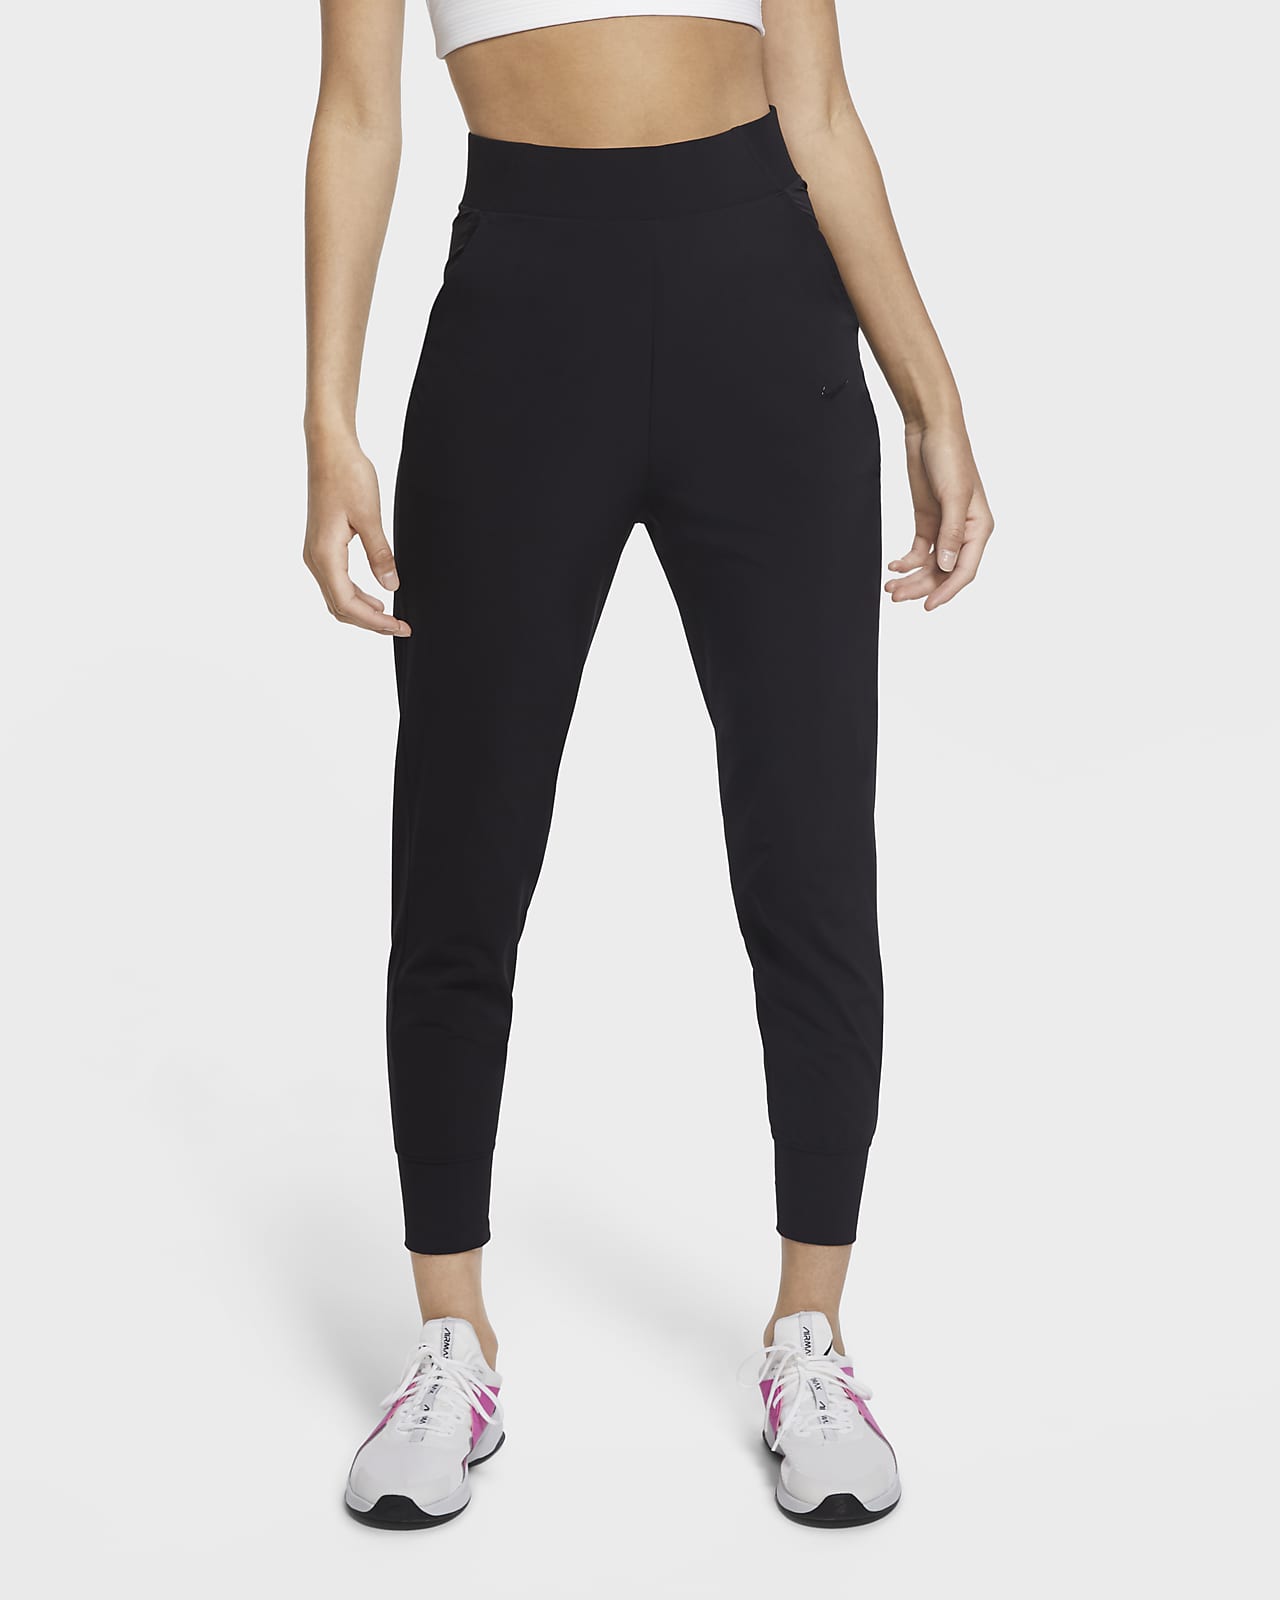 Nike Bliss Luxe Women's Training Pants